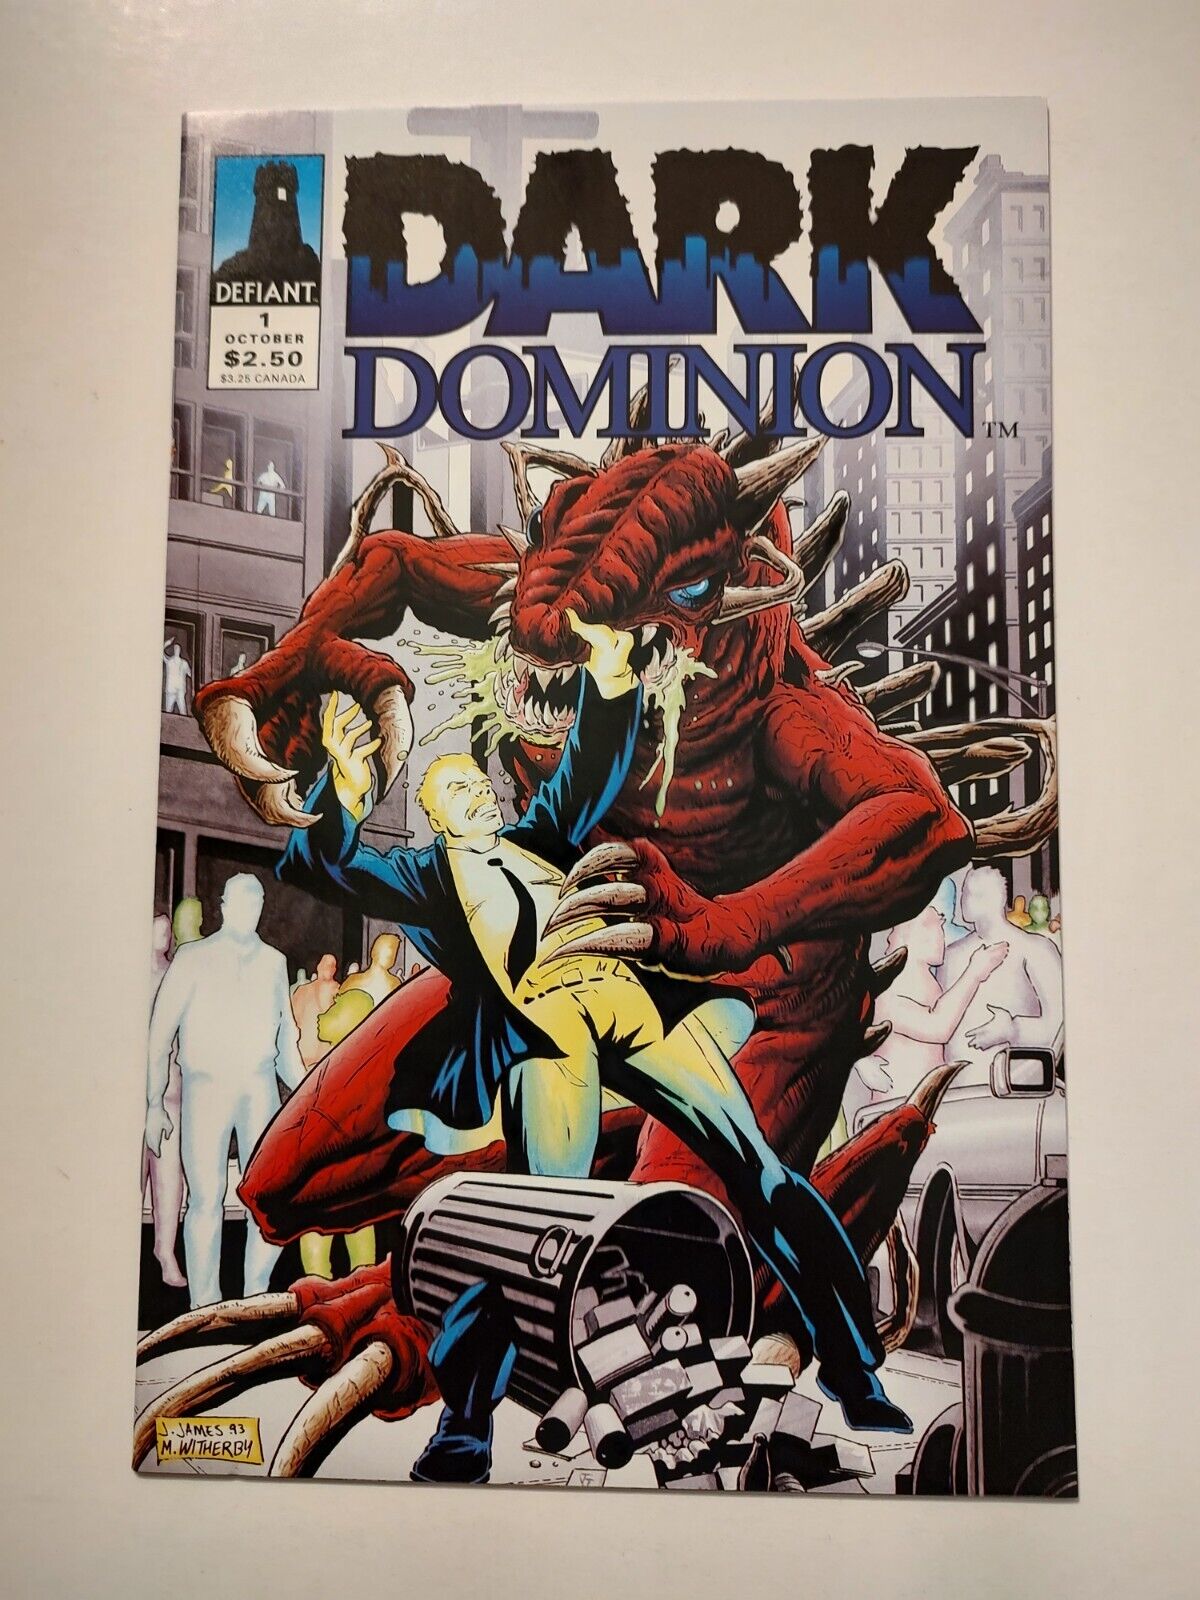 DARK DOMINION #1 (OCT 1993) 